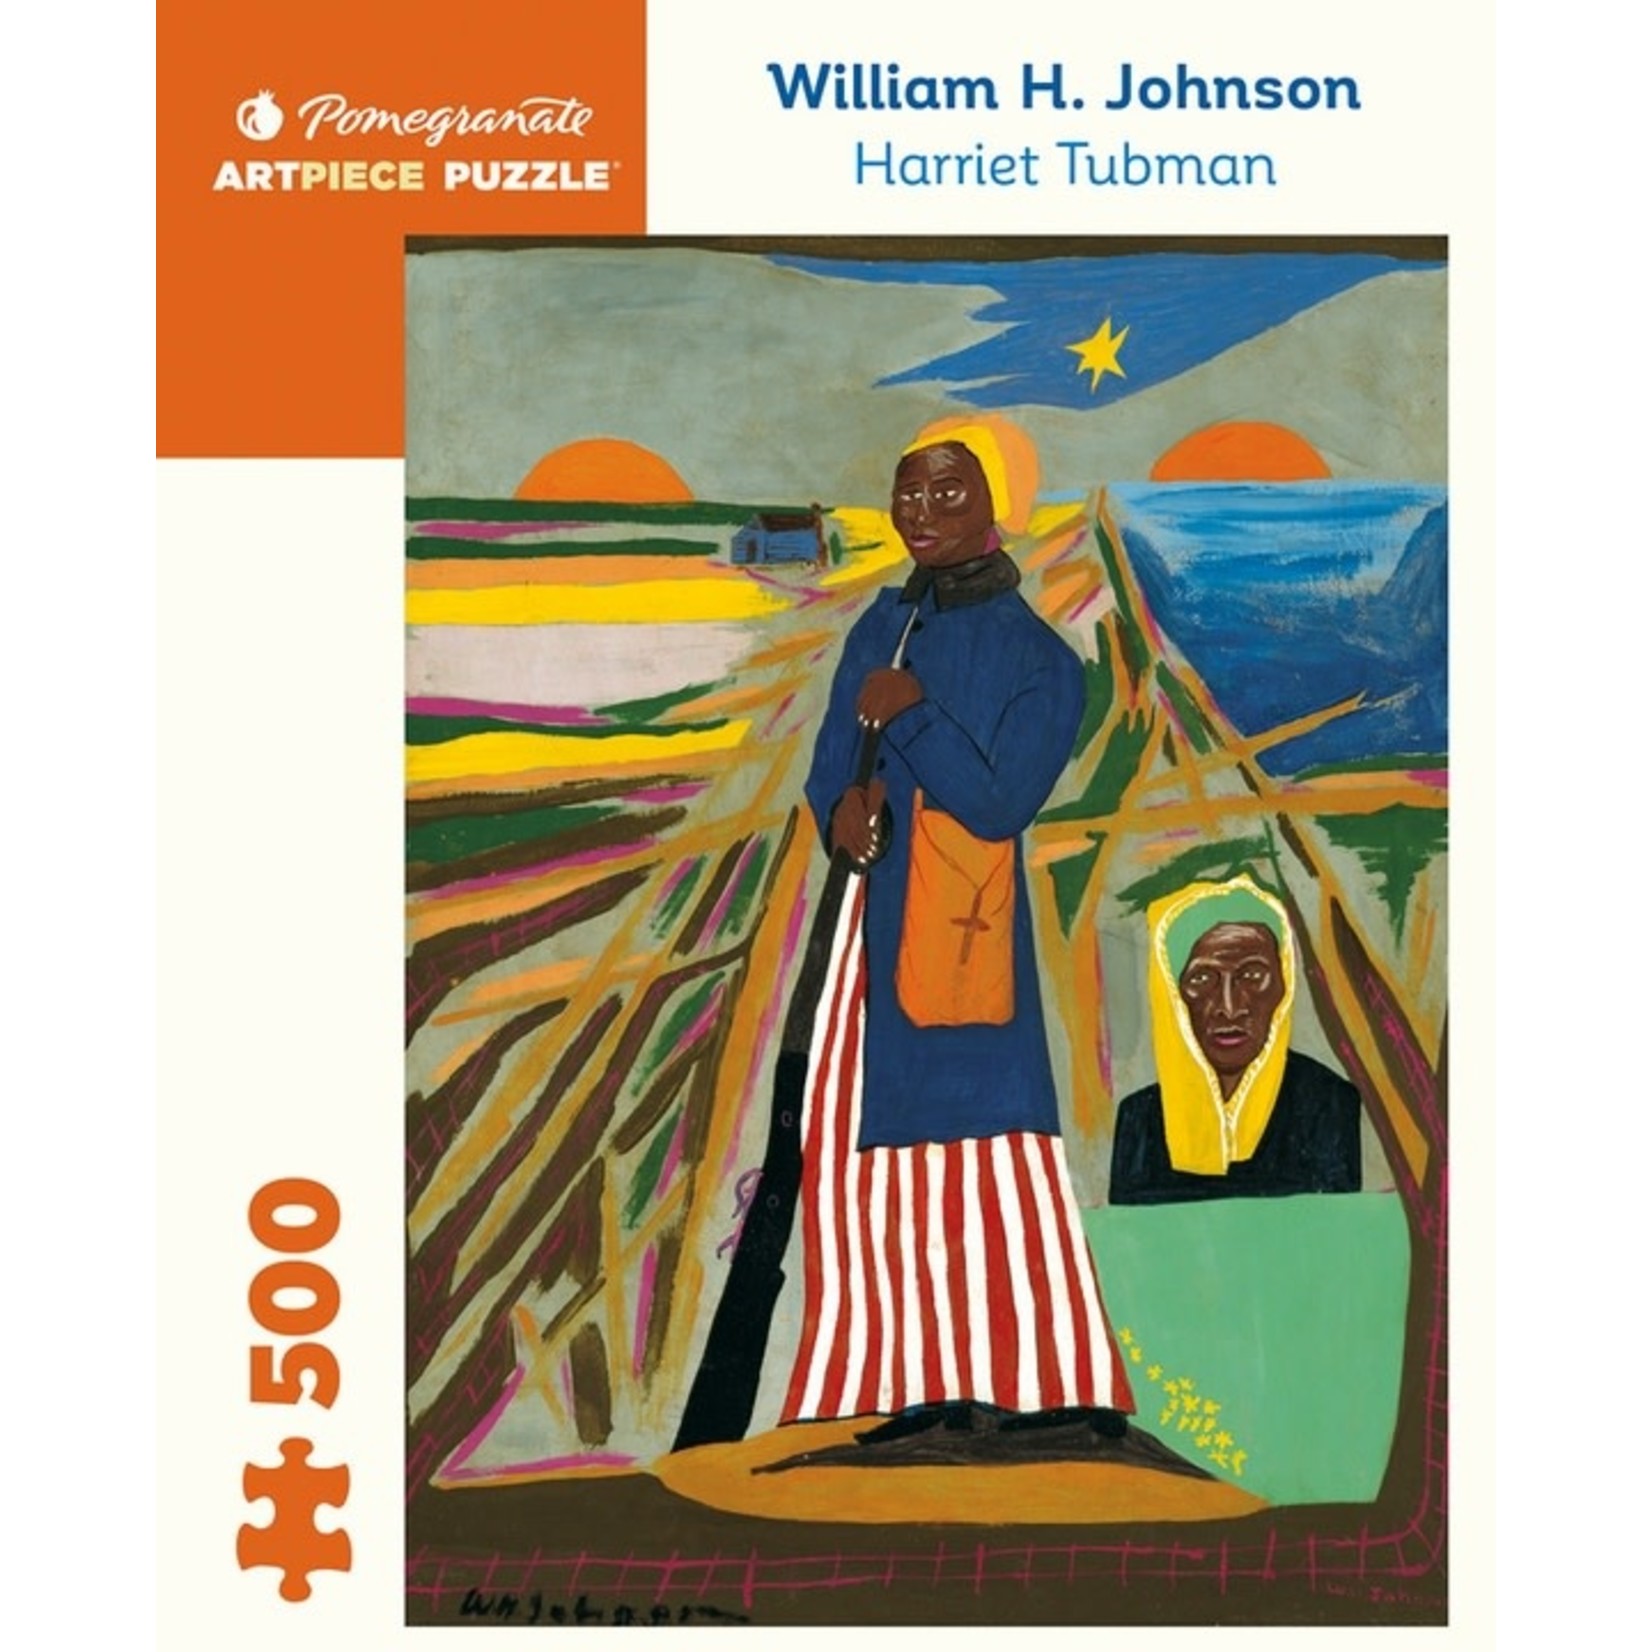 William H. Johnson: Harriet Tubman 500pc